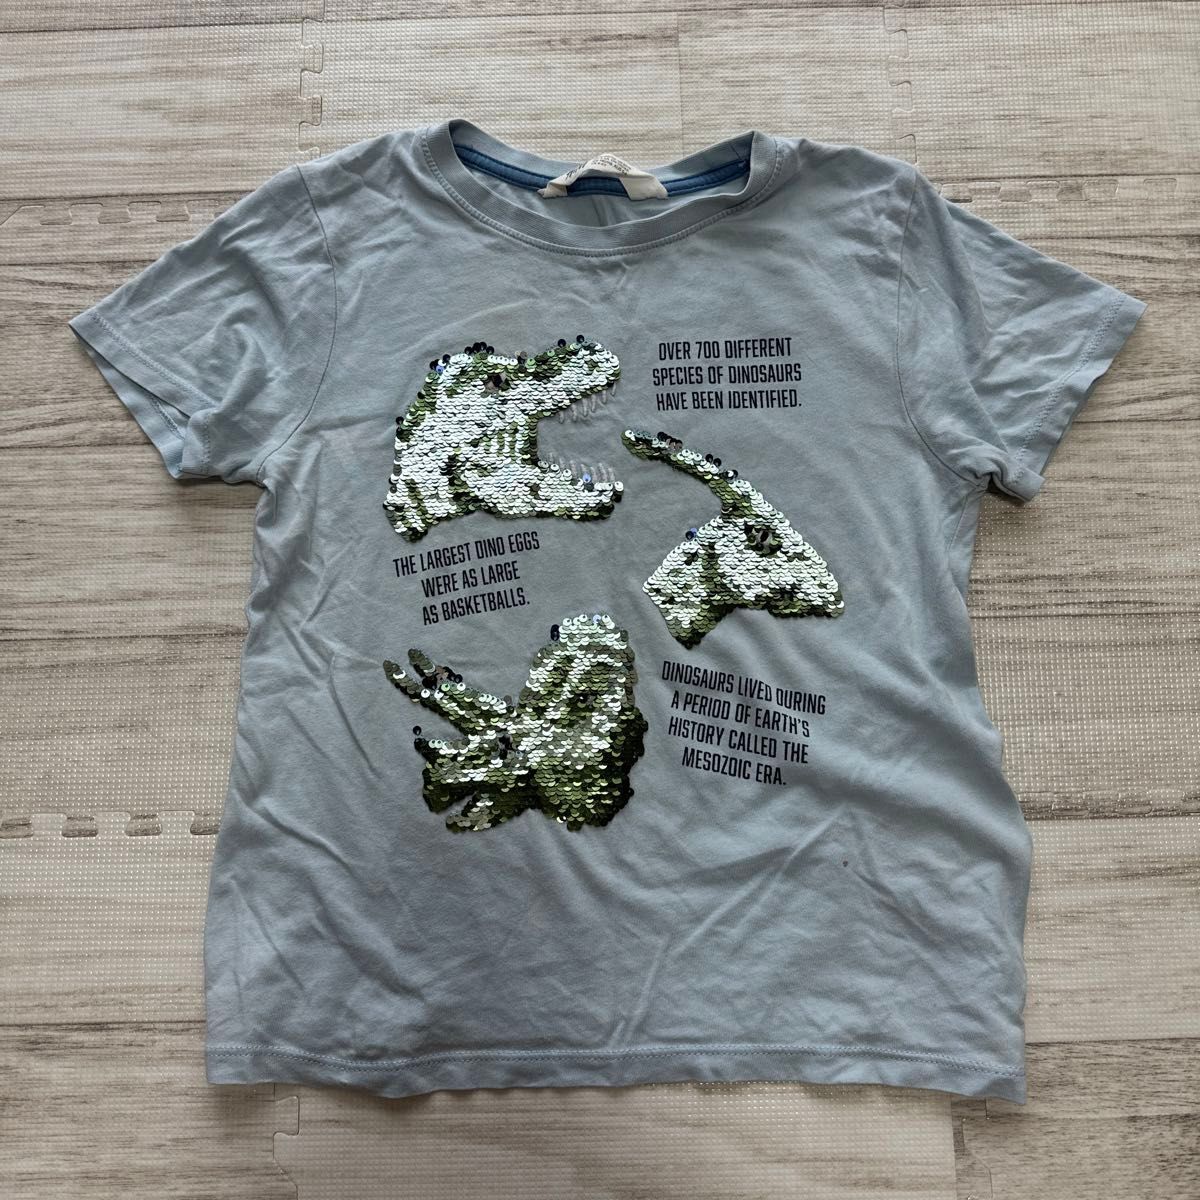 H&M 恐竜 スパンコール 半袖 Tシャツ 120